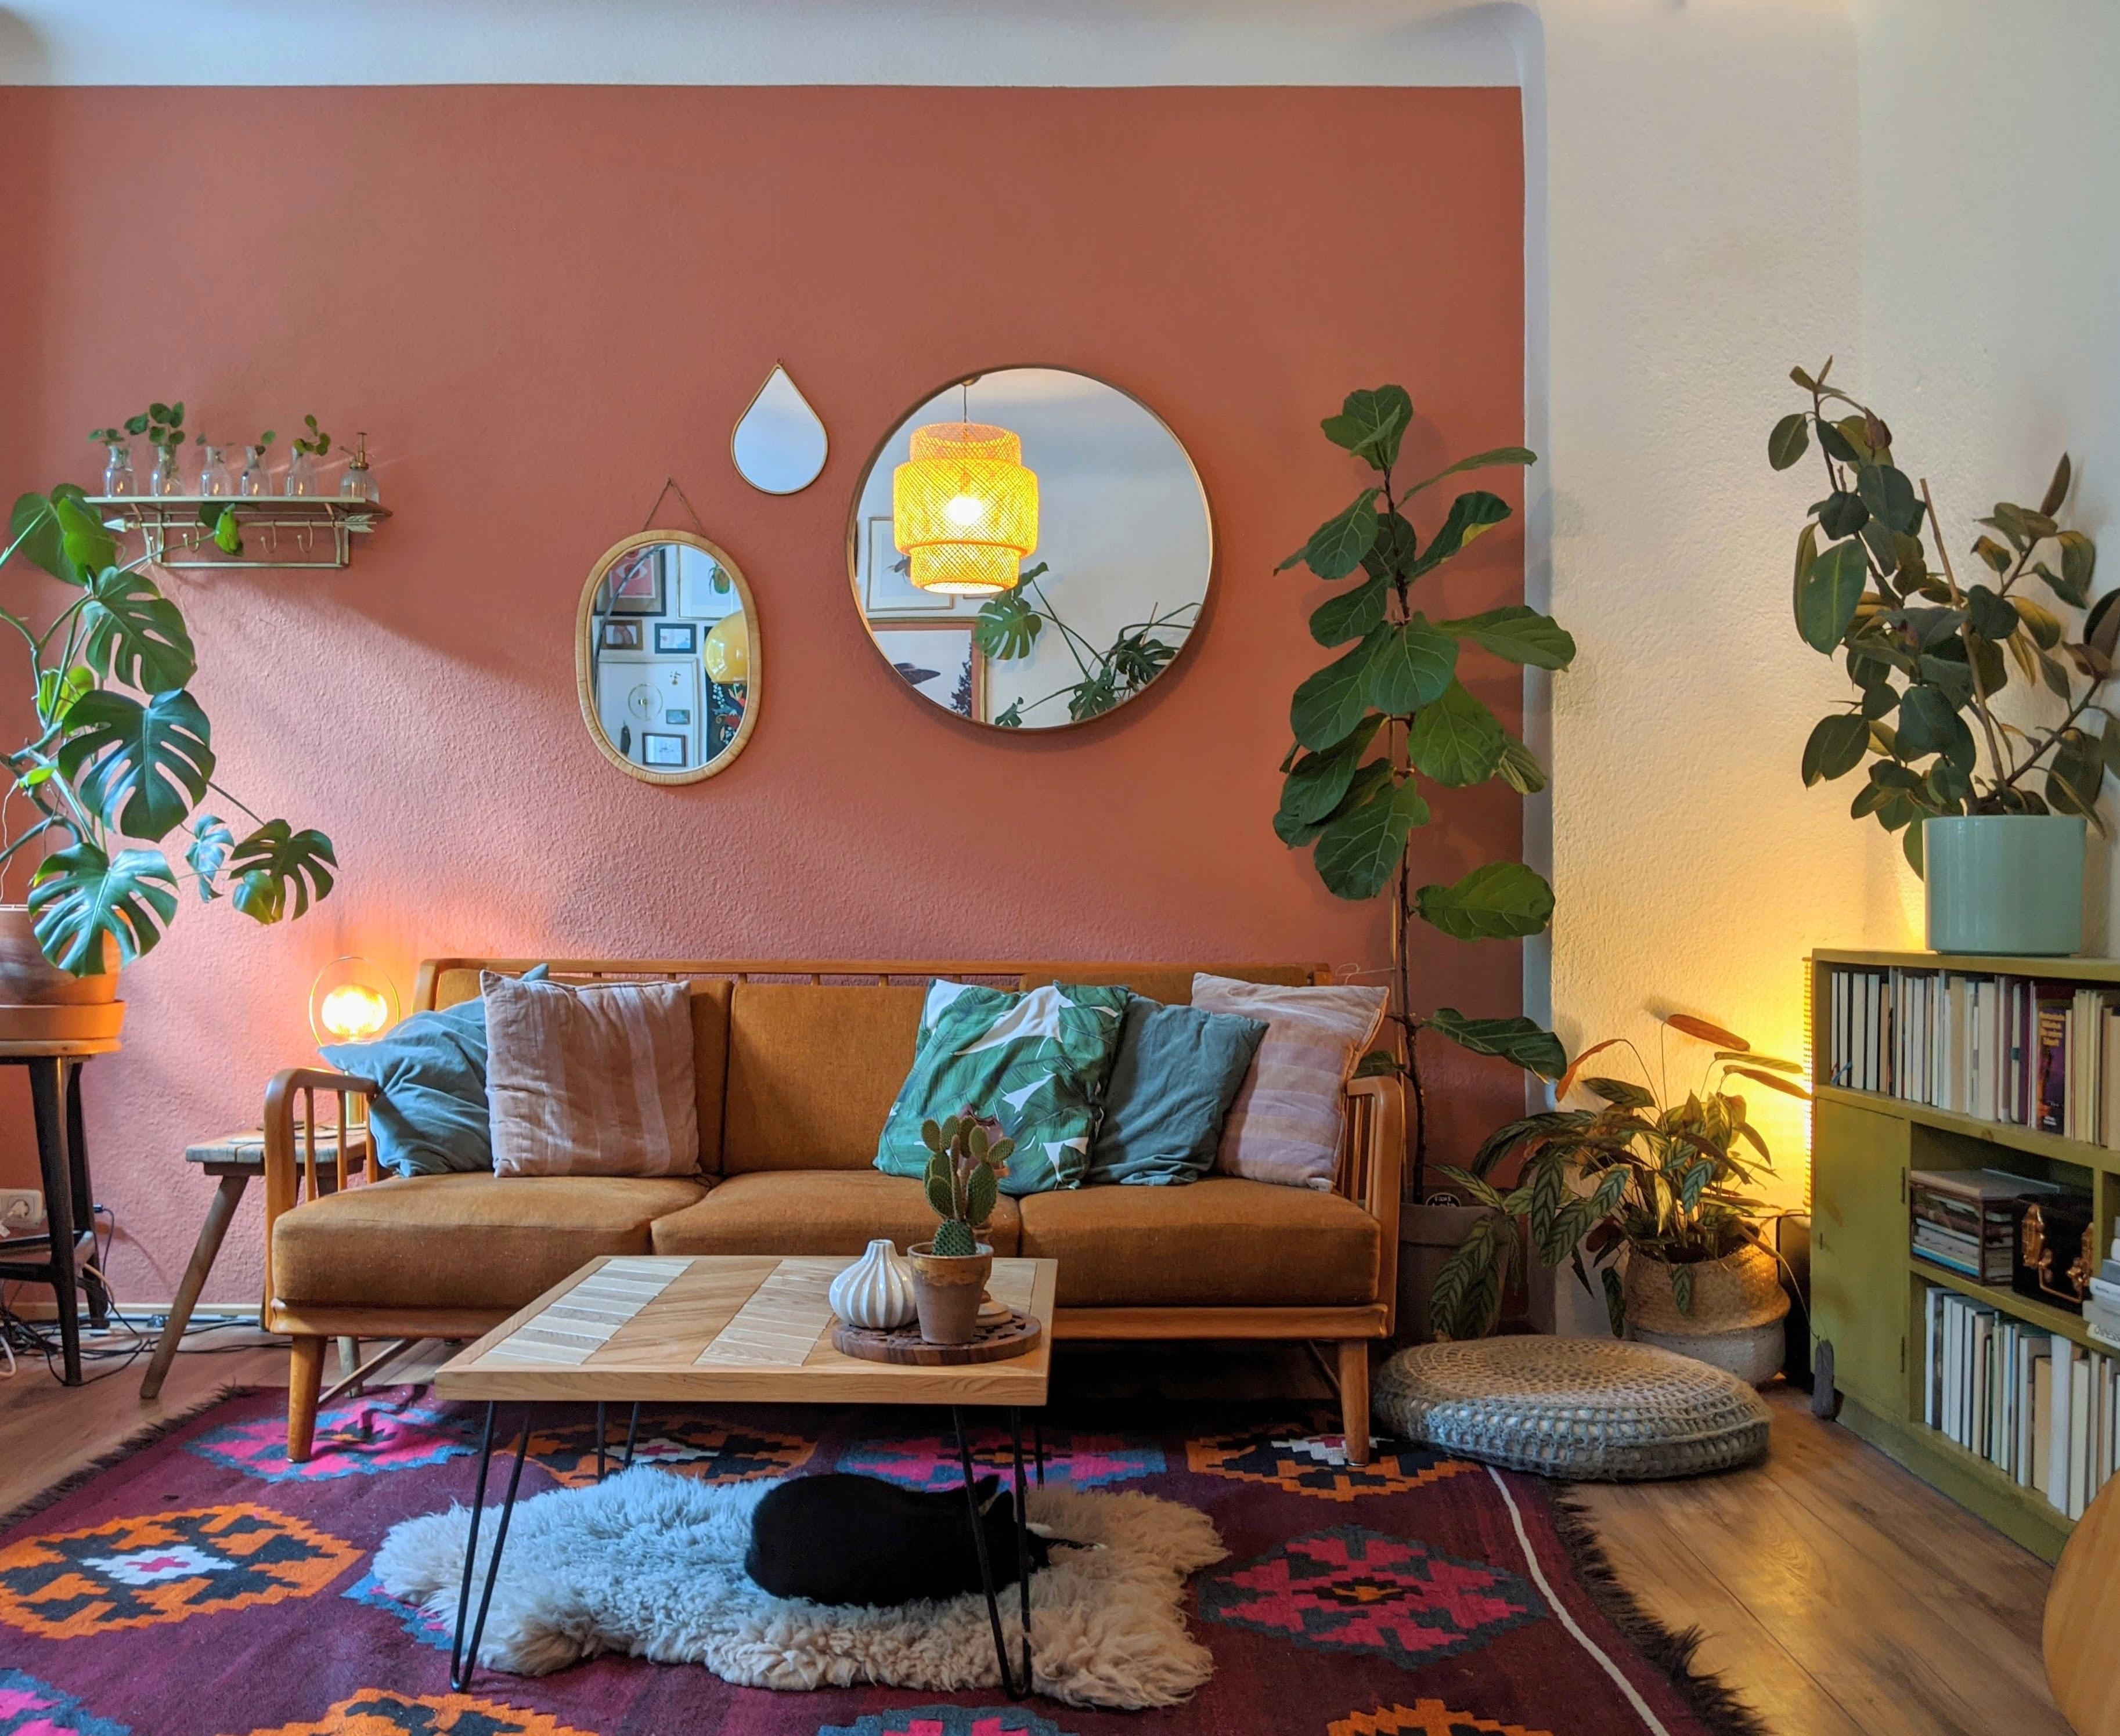 Mit seltenem Blick auf unser tolles grünes Sideboard. 😊💚 #wohnzimmer #sofa #teppich #plantgang #wandfarbe #couchtisch